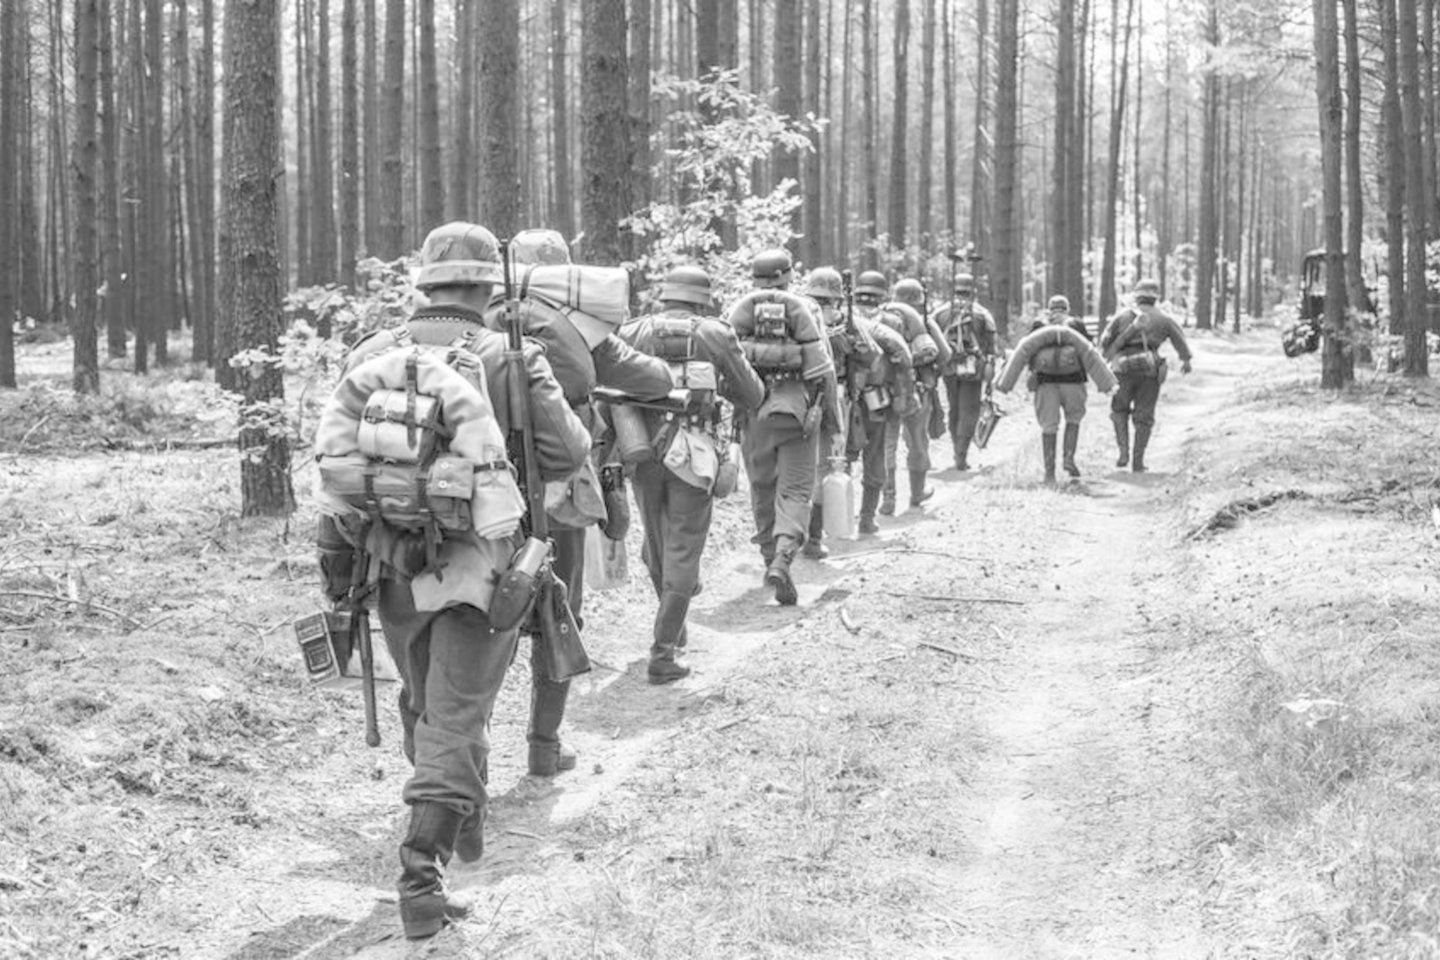 1944 m. SSRS kariuomenė Žemaitijoje pradėjo puolamąją Klaipėdos operaciją, kurios tikslas buvo užimti Klaipėdą, Baltijos pajūrį iki Palangos ir atkirsti Vokietijos kariuomenę Latvijoje nuo piečiau esančių jos grupių. Po savaitės mūšių sovietai pasiekė Baltiją, bet Klaipėdą pavyko užimti tik kitų metų sausio pabaigoje.<br>123rf